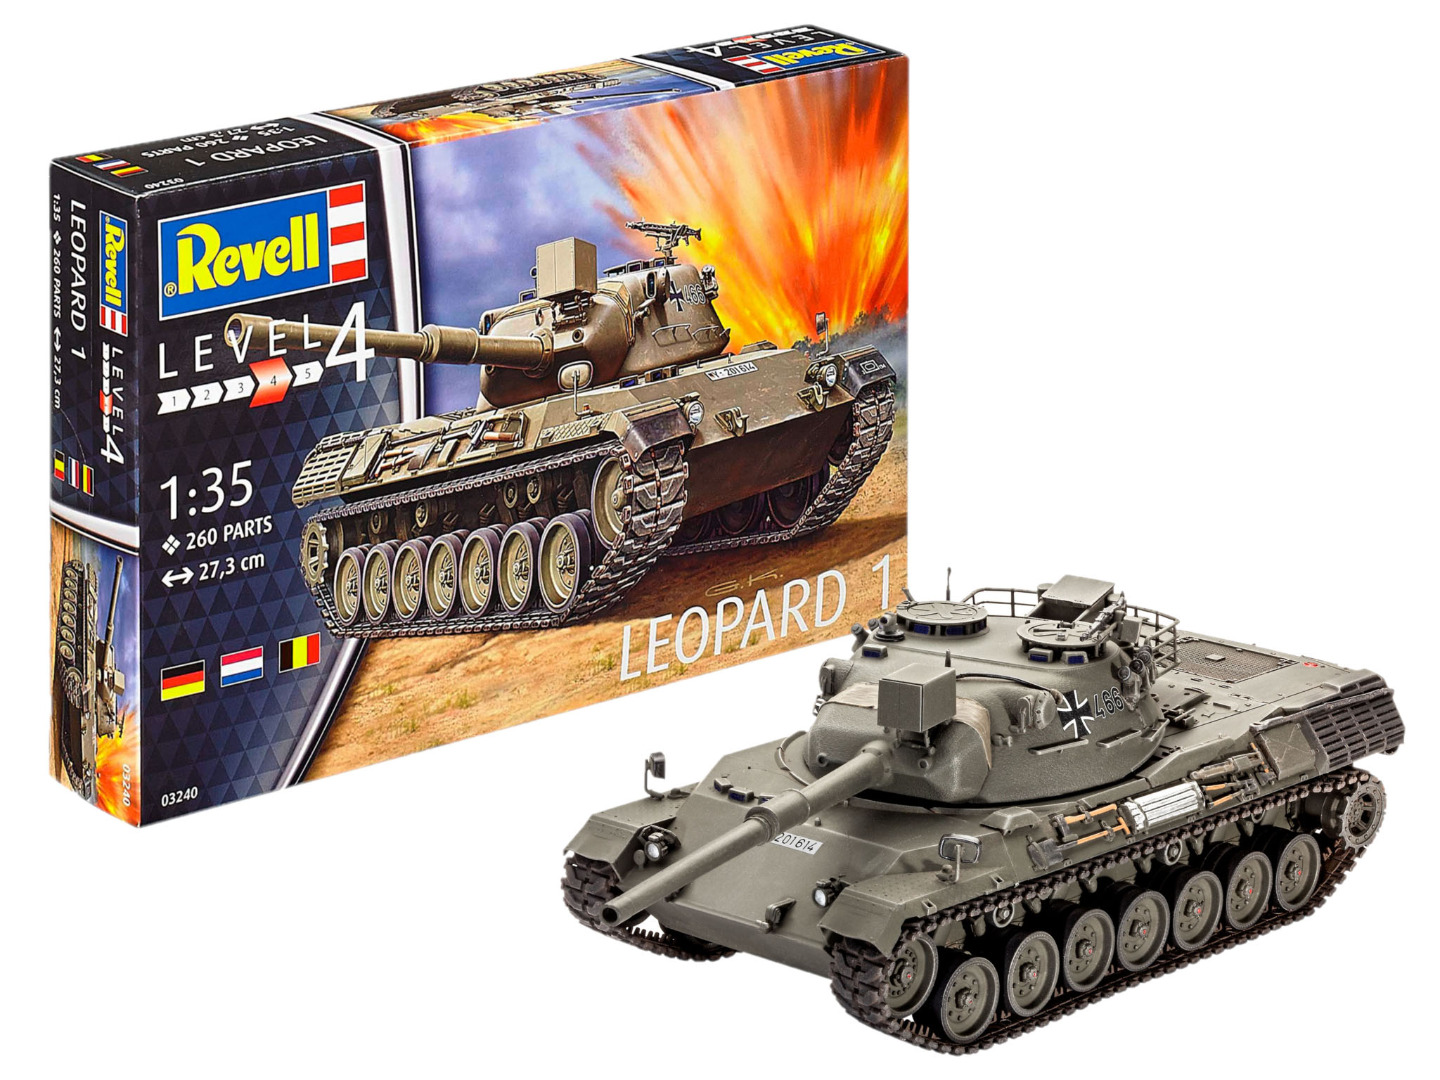 Revell Model Kit Leopard 1 Scale 1:35